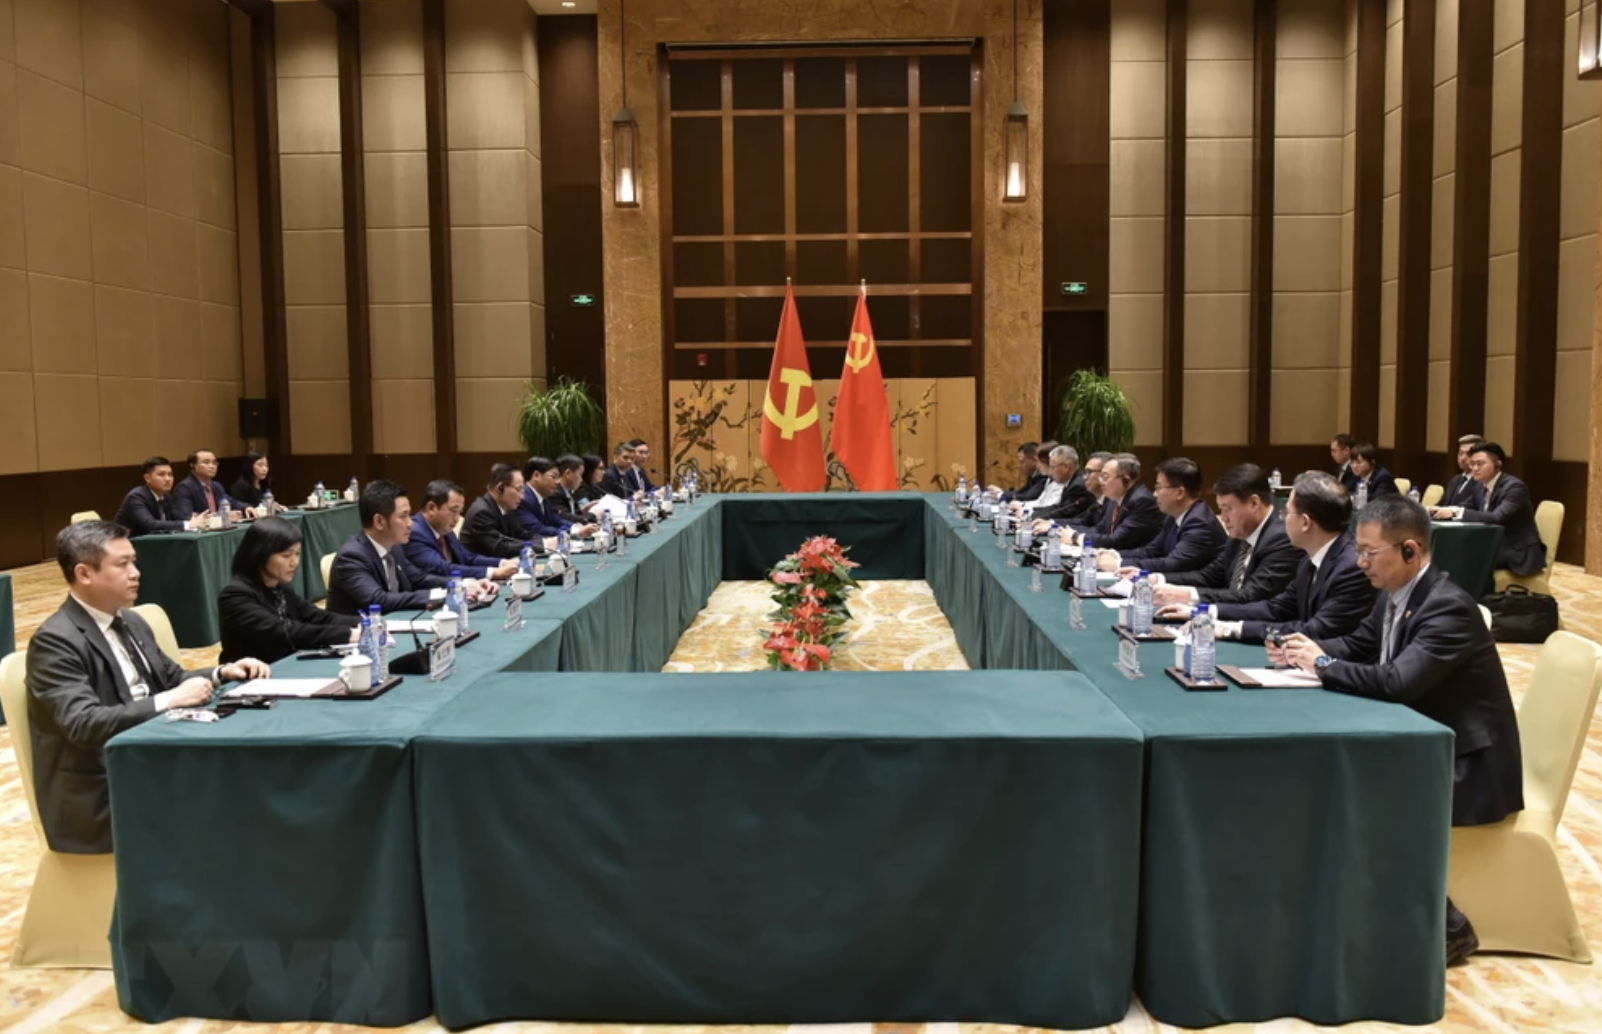 越共中央书记处书记、中央对外部部长黎怀忠与中共中央委员、对外联络部部长刘建超举行会谈。